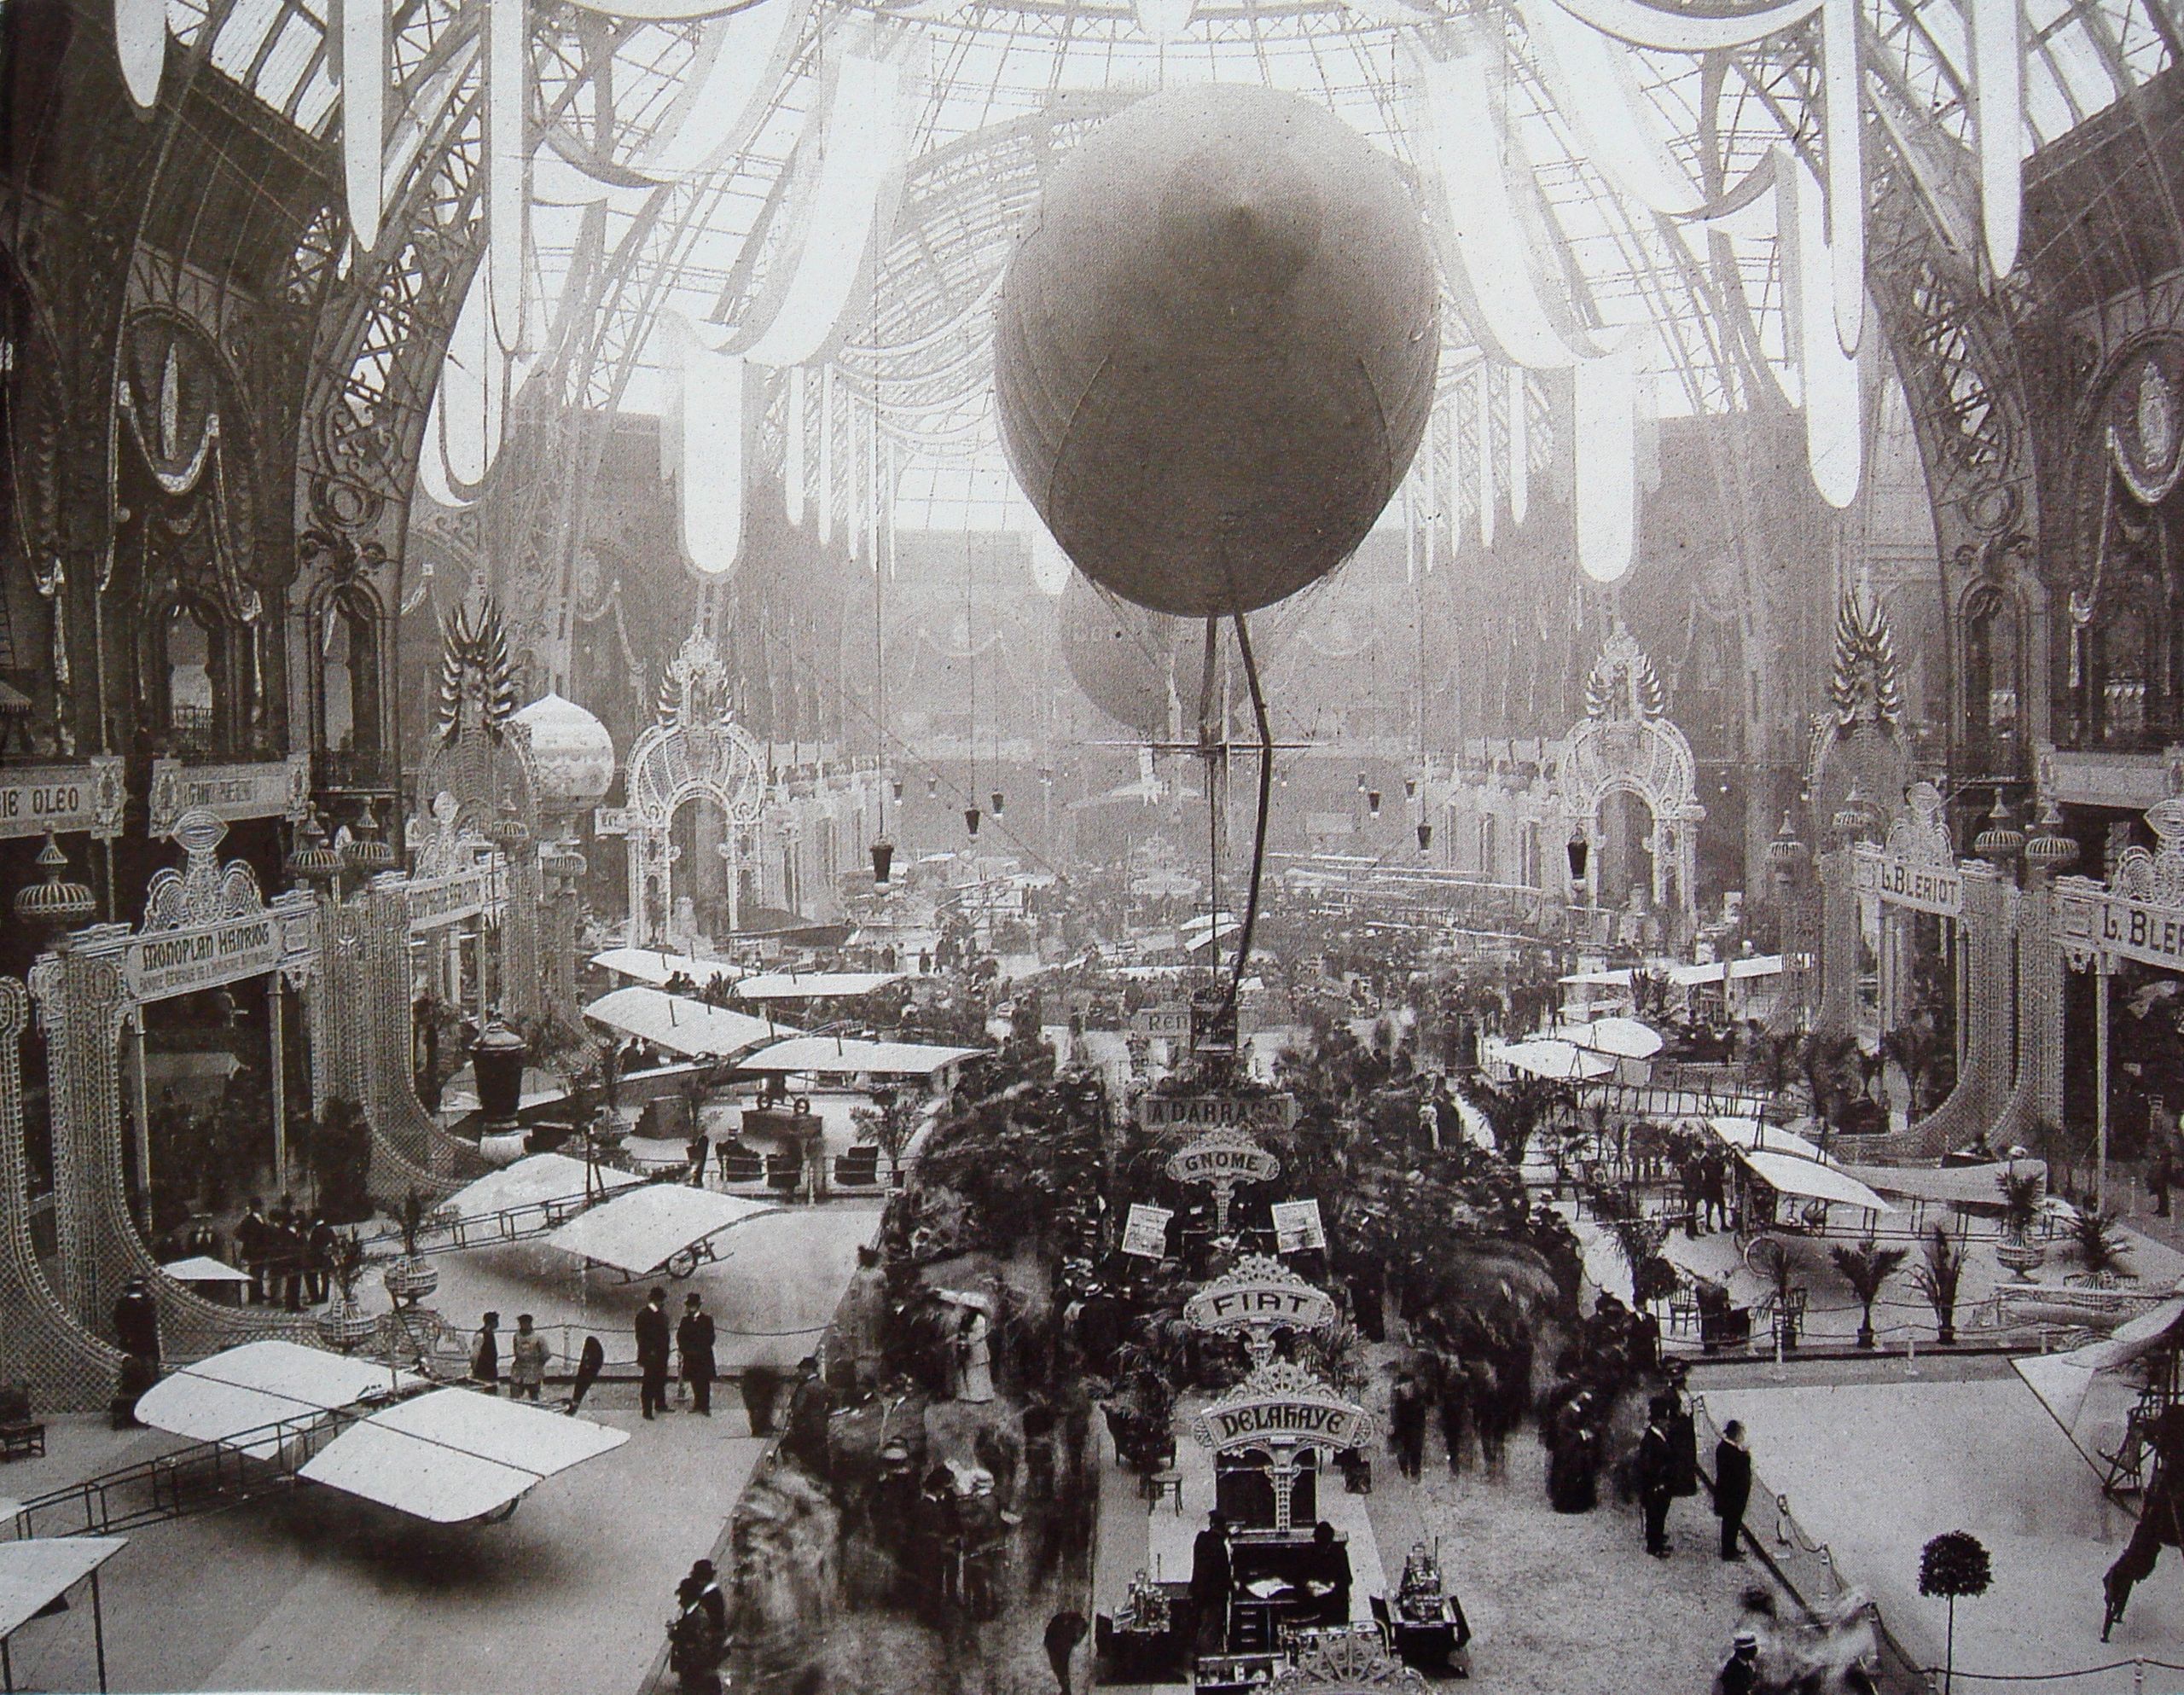 Salon de locomotion aerienne 1909 Grand Palais Paris